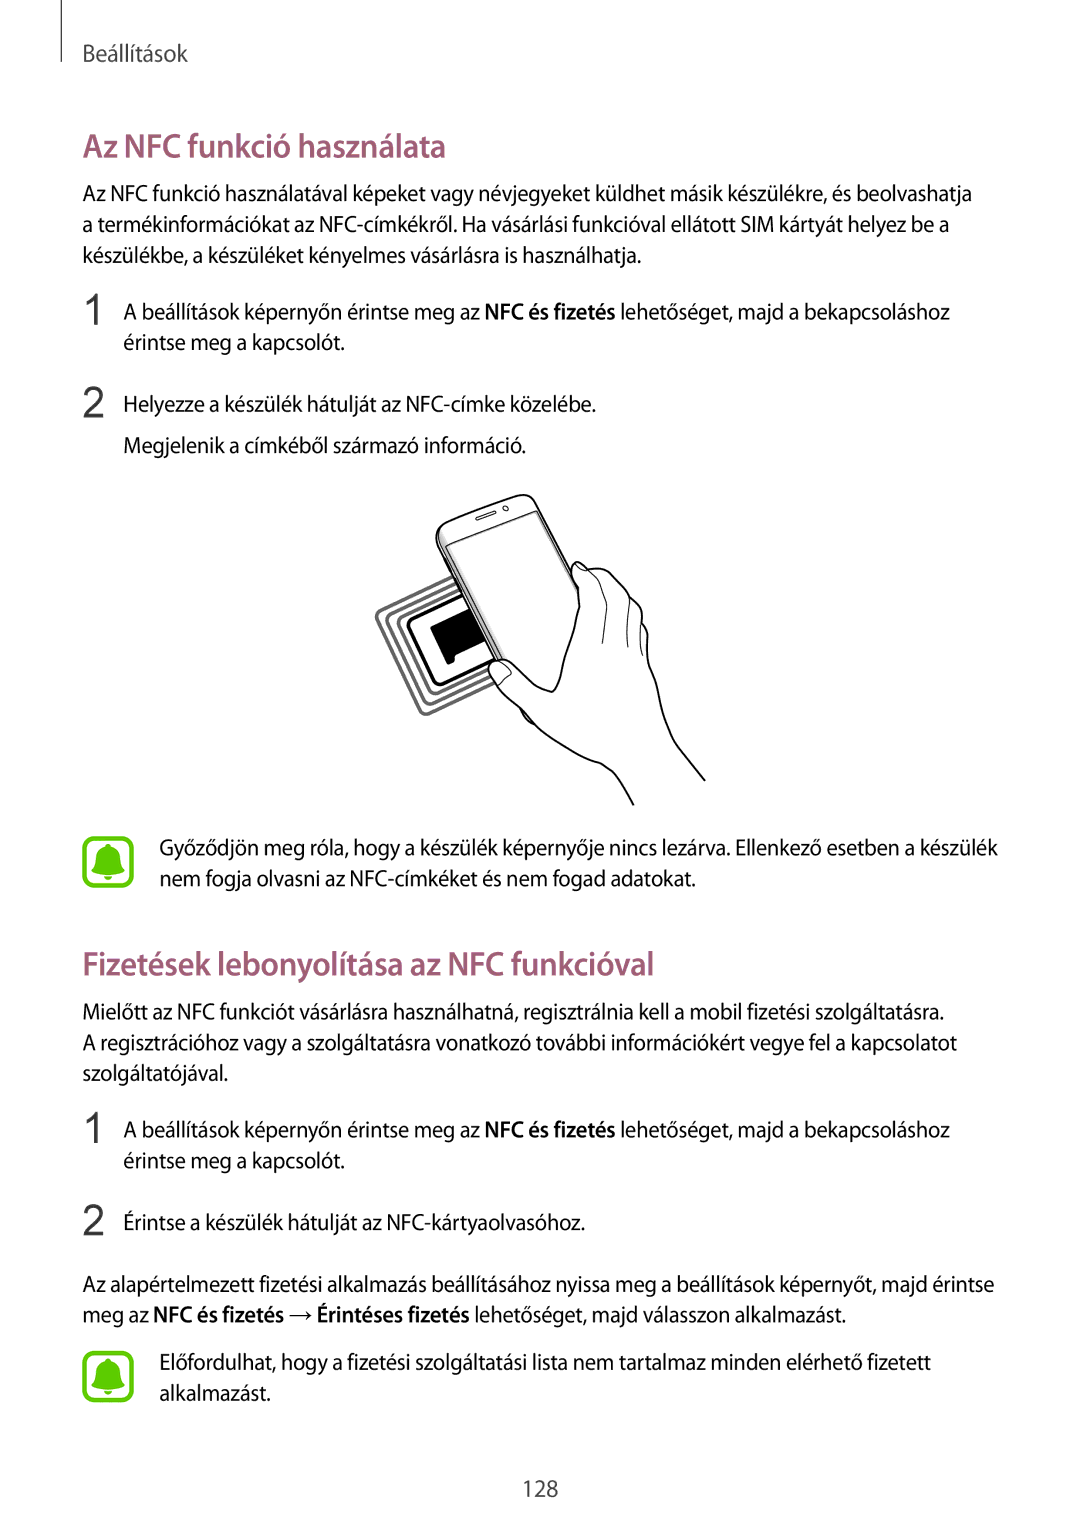 Samsung SM-G928FZDAXEH, SM-G928FZKAXEH manual Az NFC funkció használata, Fizetések lebonyolítása az NFC funkcióval 